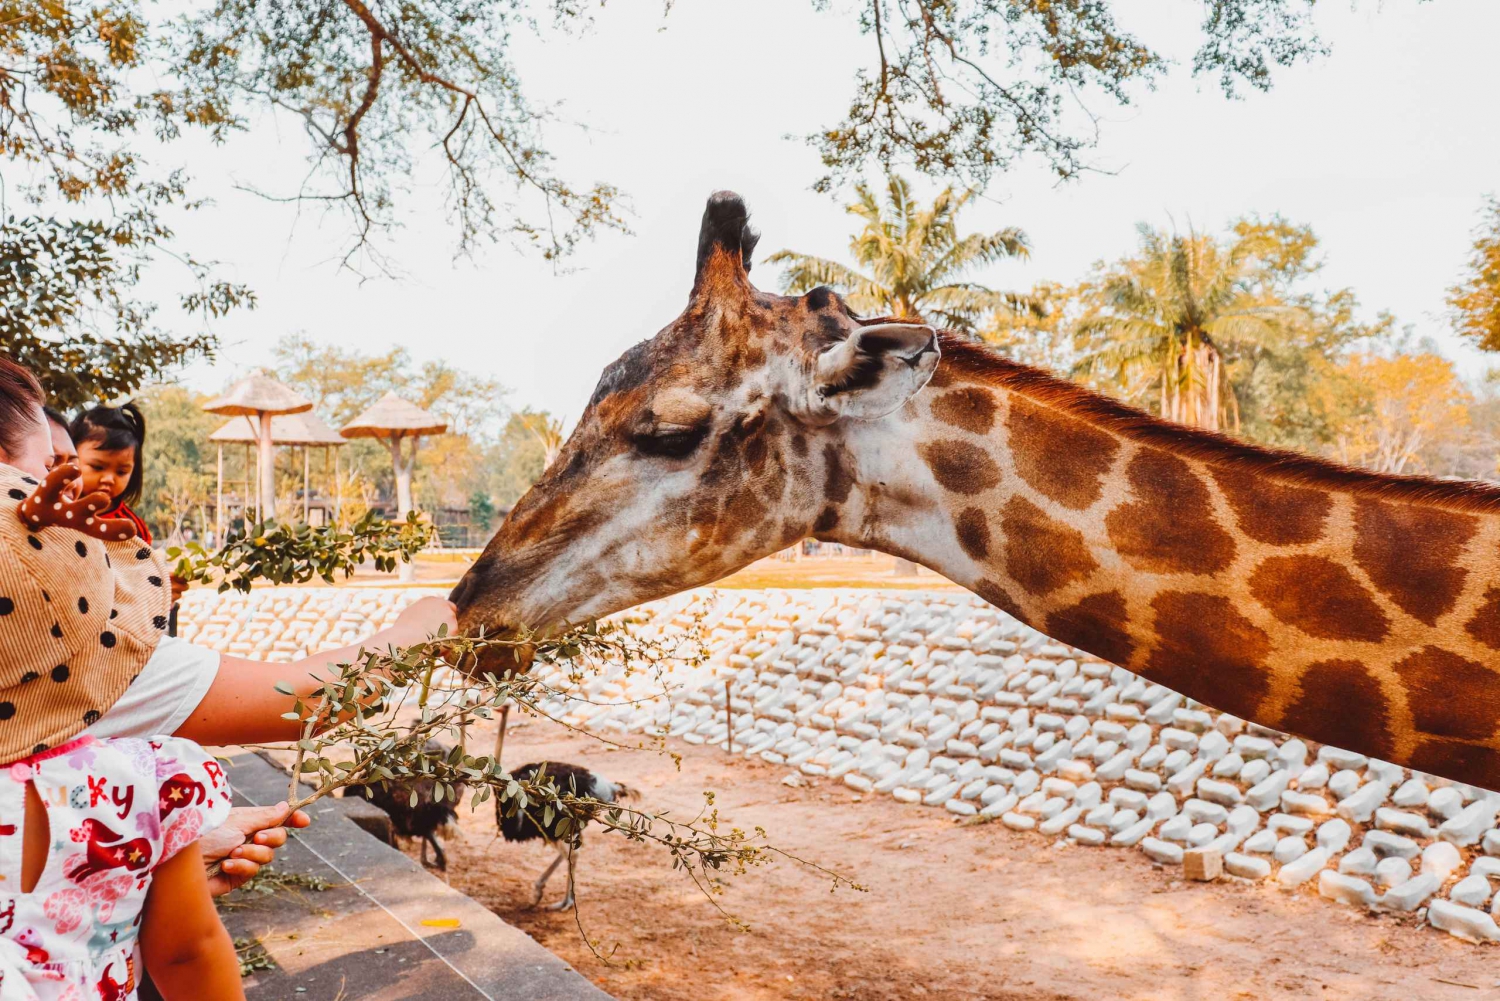 elephant Orphanage, Giraffe Center and Bomas of Kenya